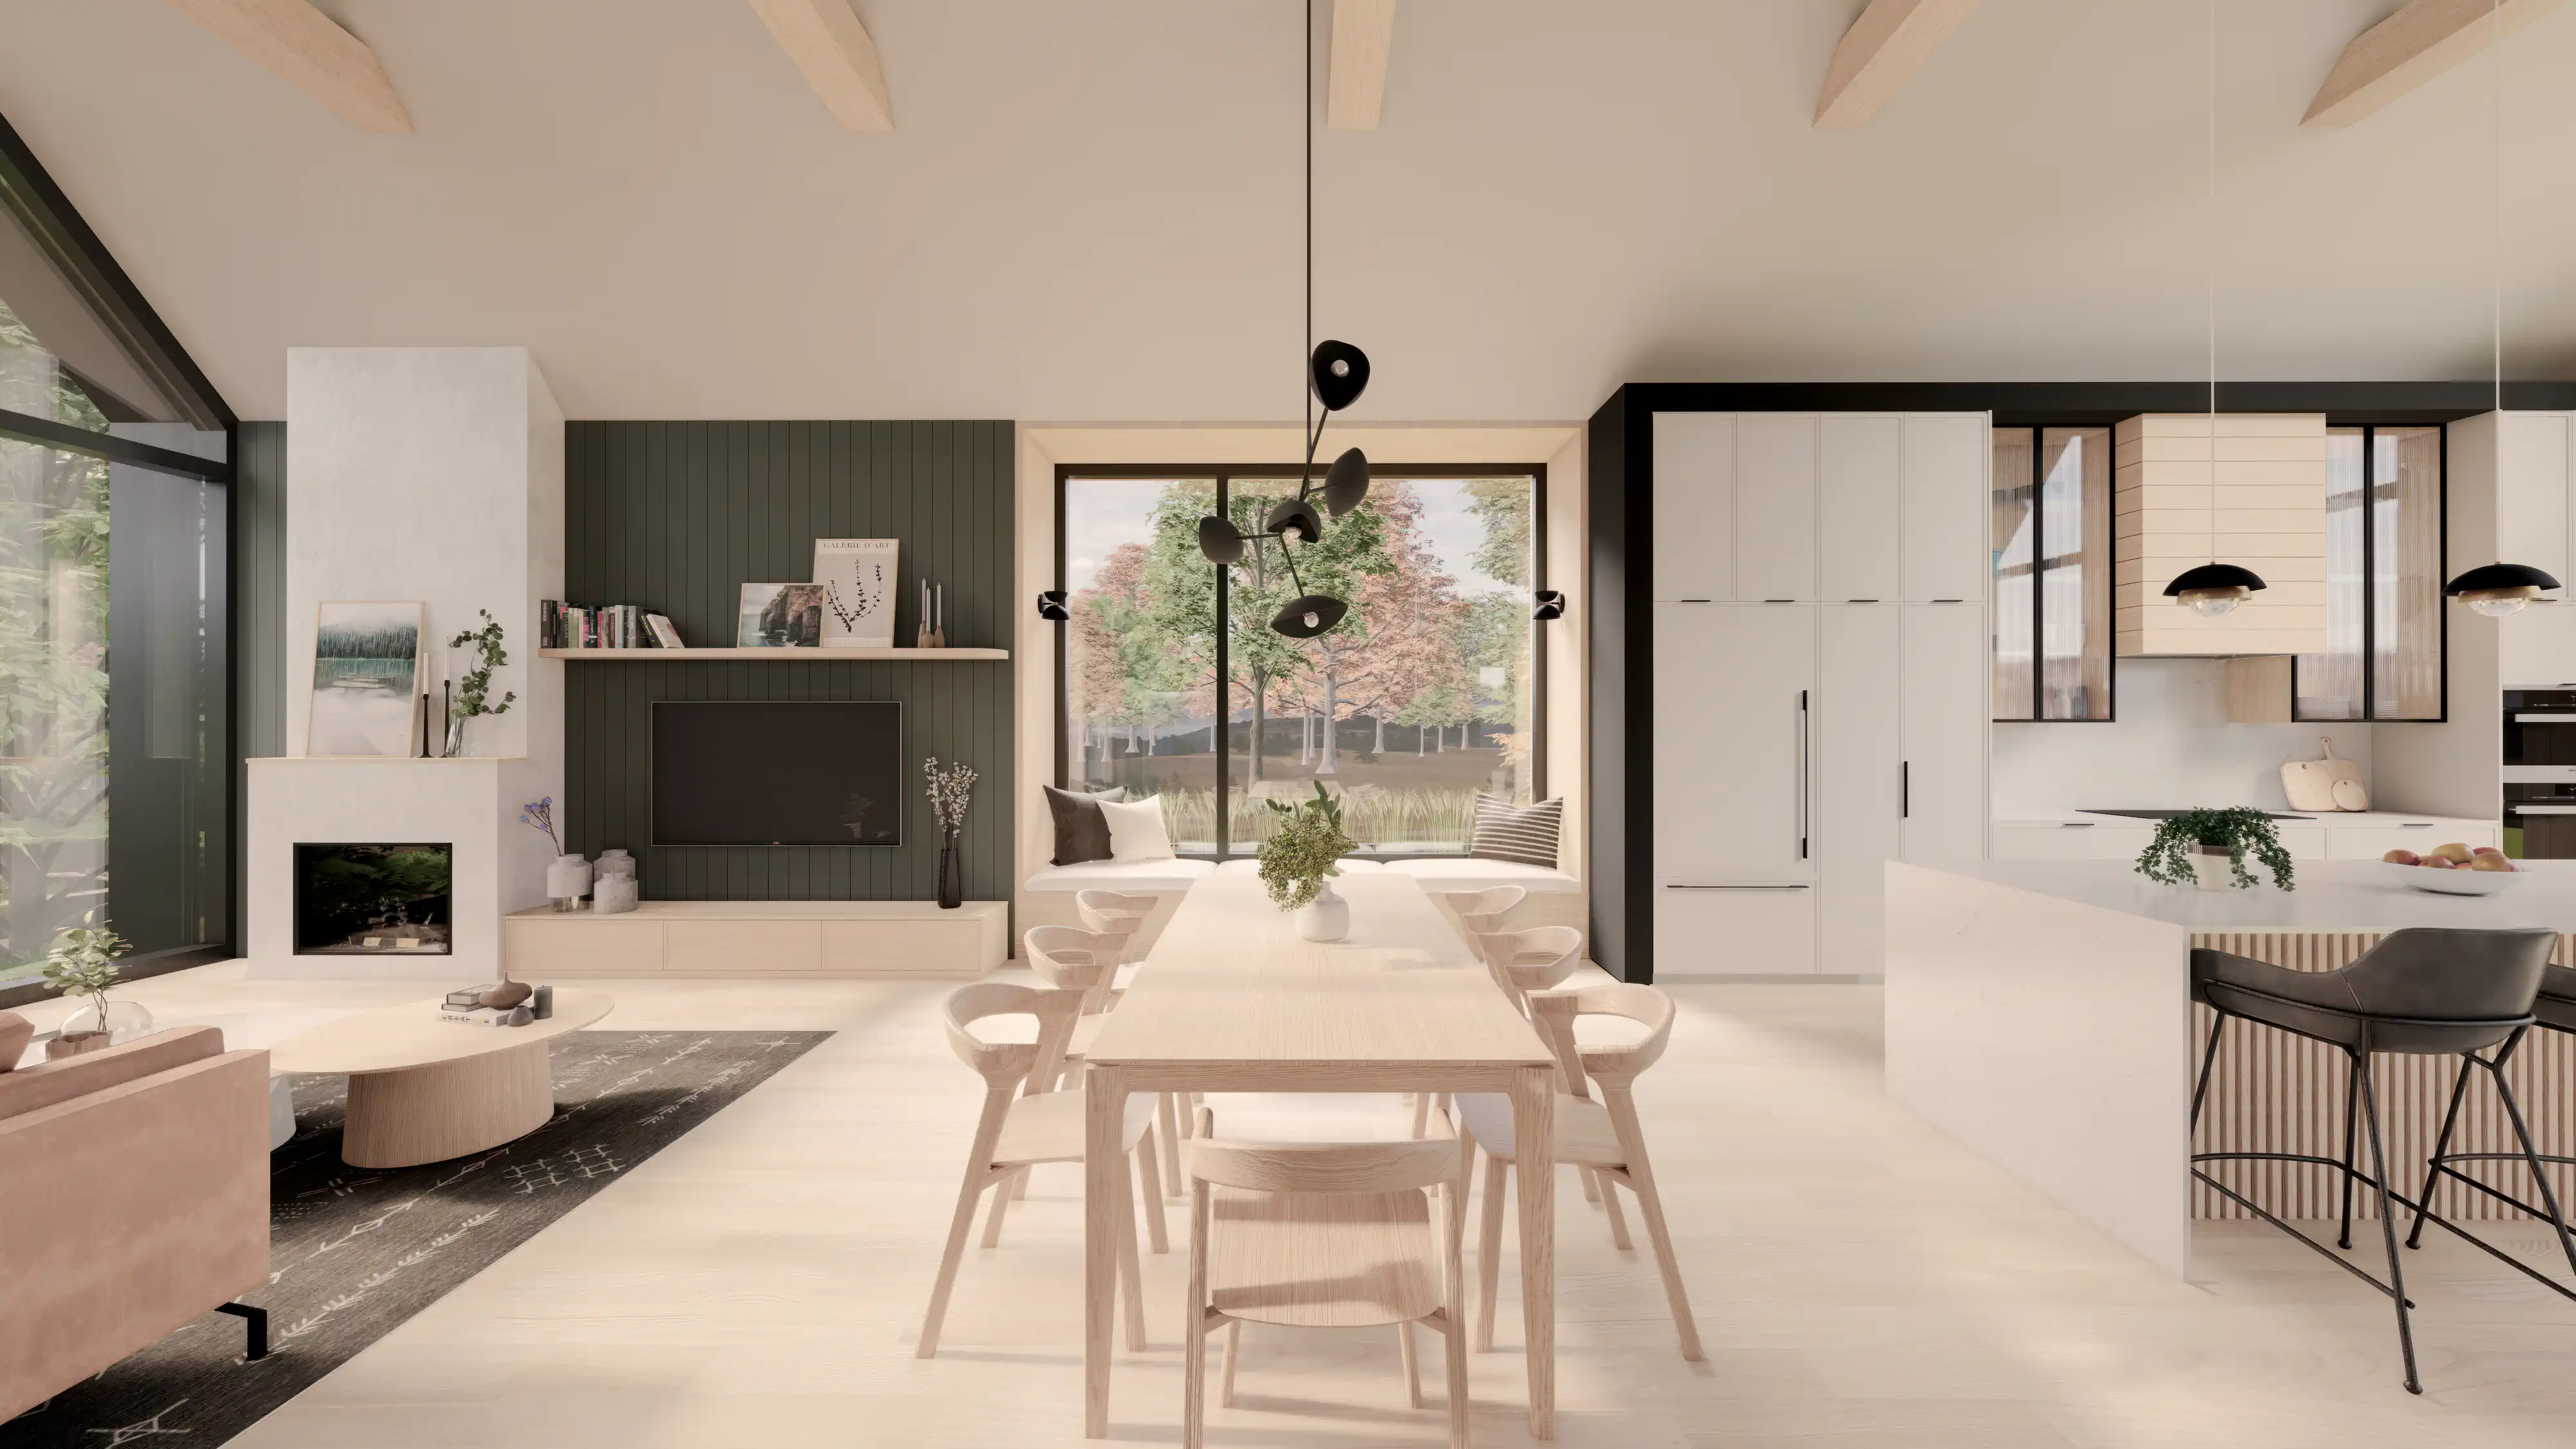 Espace de vie ouvert contemporain avec une table à manger en bois, des luminaires suspendus élégants et une vue sur le jardin, intérieur signé Sarah Brown Design